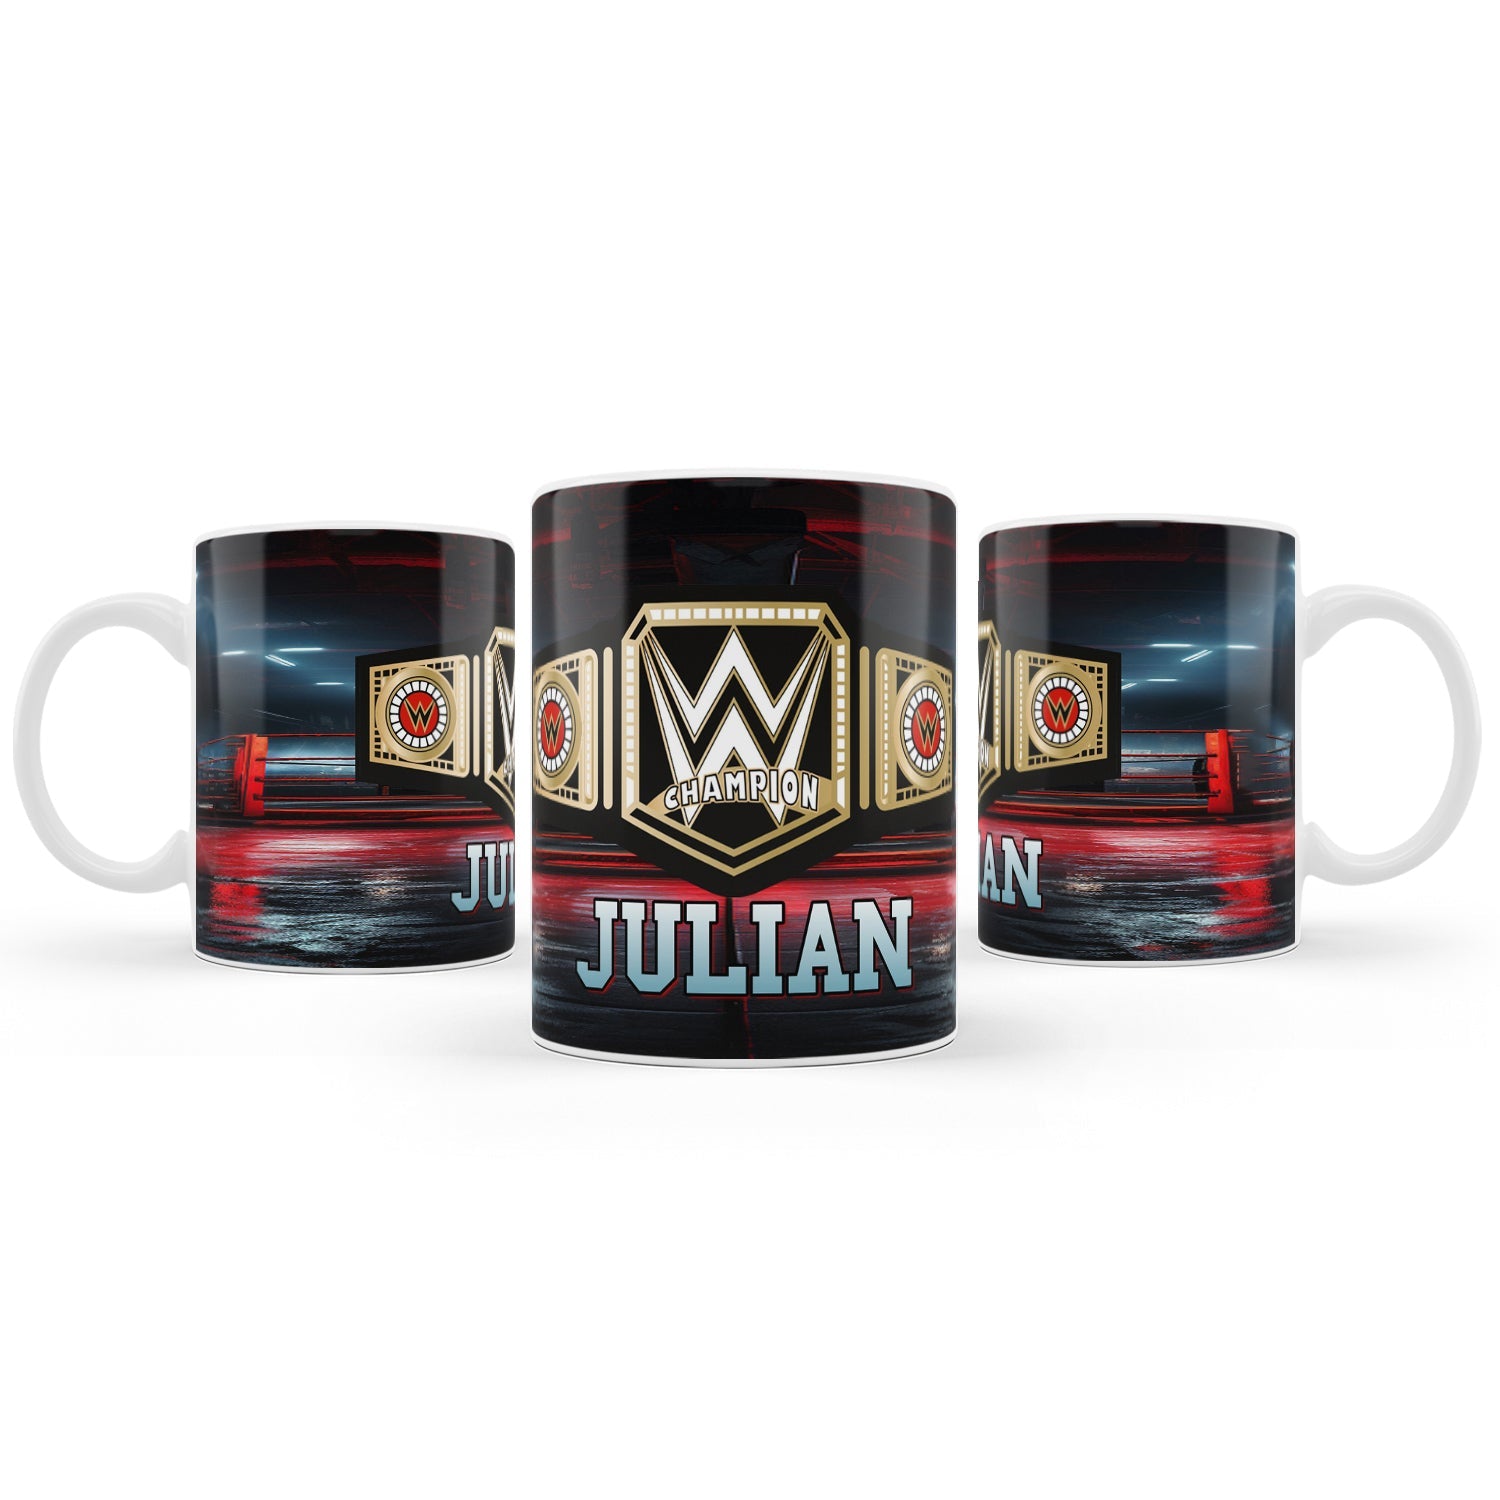 WWE themed sublimation mug